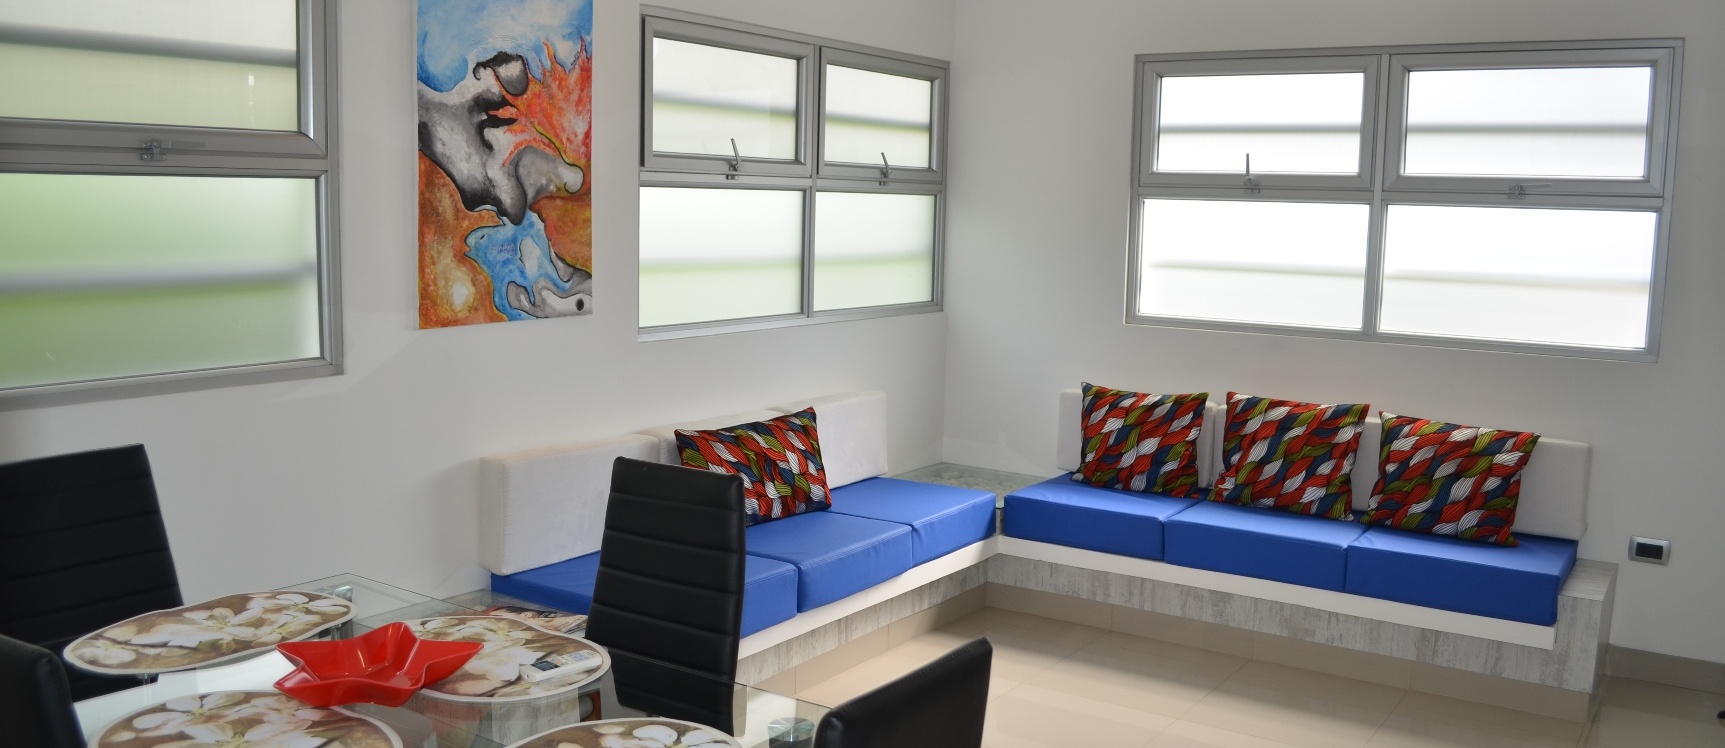 GeoBienes -  Suite en alquiler en Samborondon km 5 Urbanización Casa Blanca - Plusvalia Guayaquil Casas de venta y alquiler Inmobiliaria Ecuador